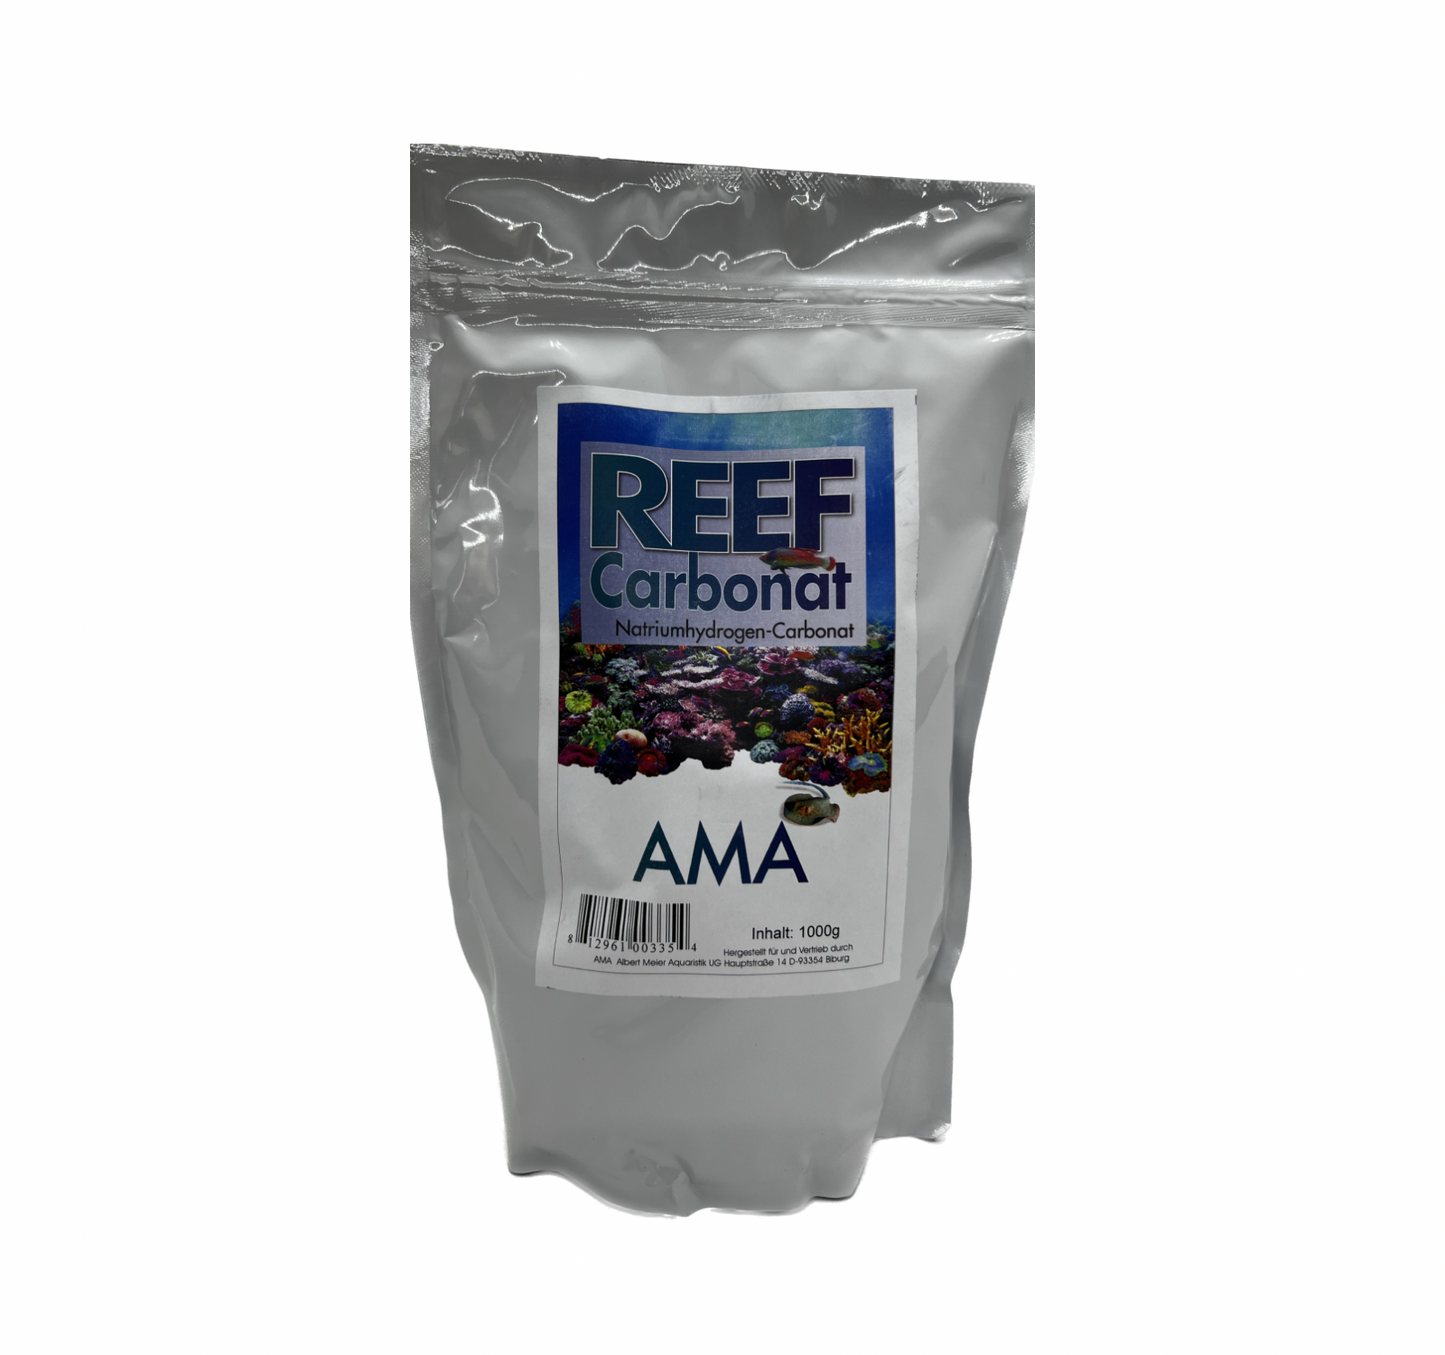 Reef Carbonat